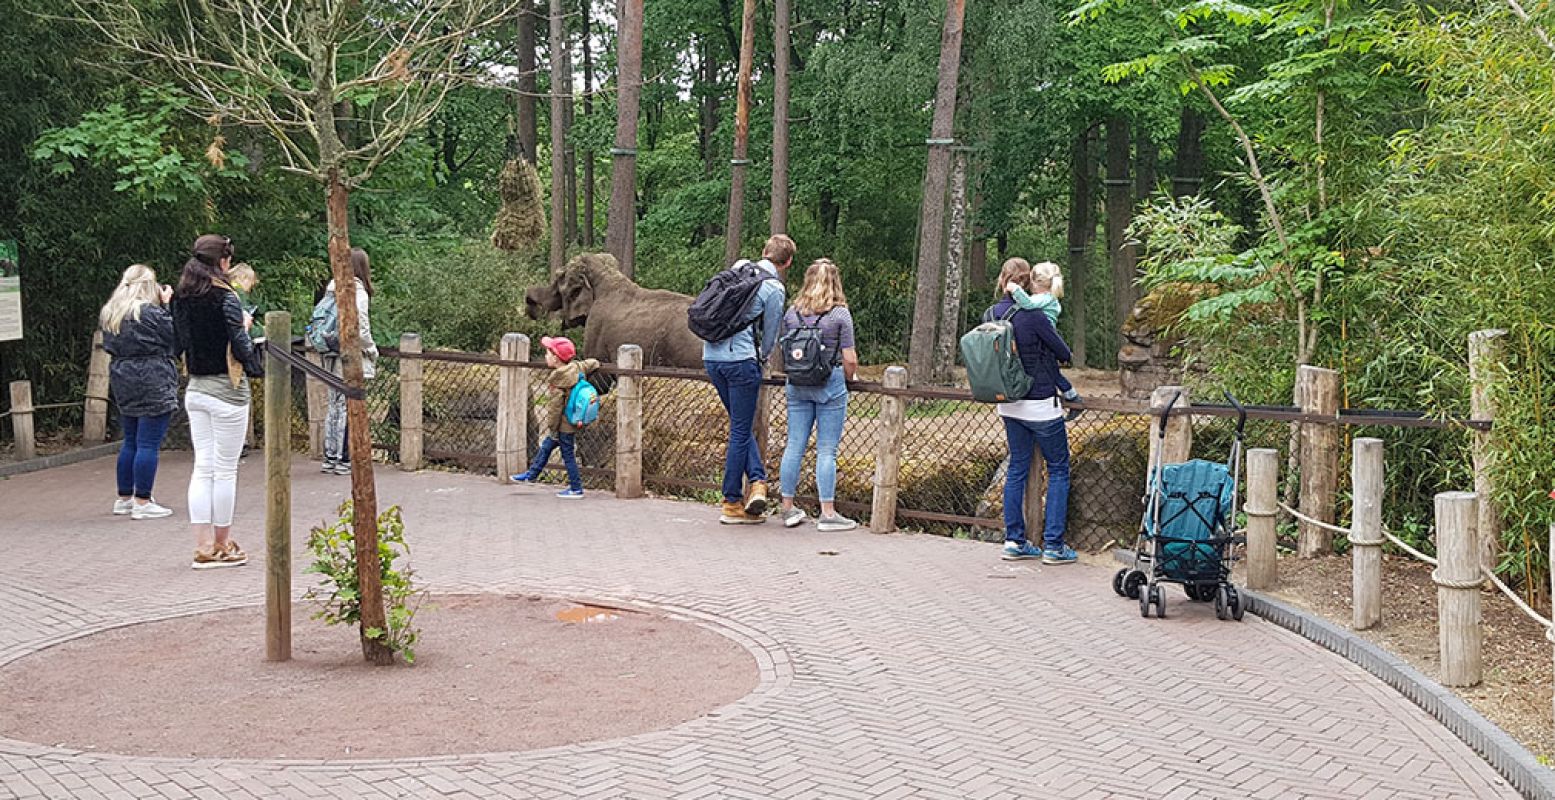 Bezoekers van Burgers' Zoo kijken op 1,5 meter afstand van elkaar naar de olifanten. Kijkspots op de grond geven aan waar je moet staan. Foto: DagjeWeg.NL